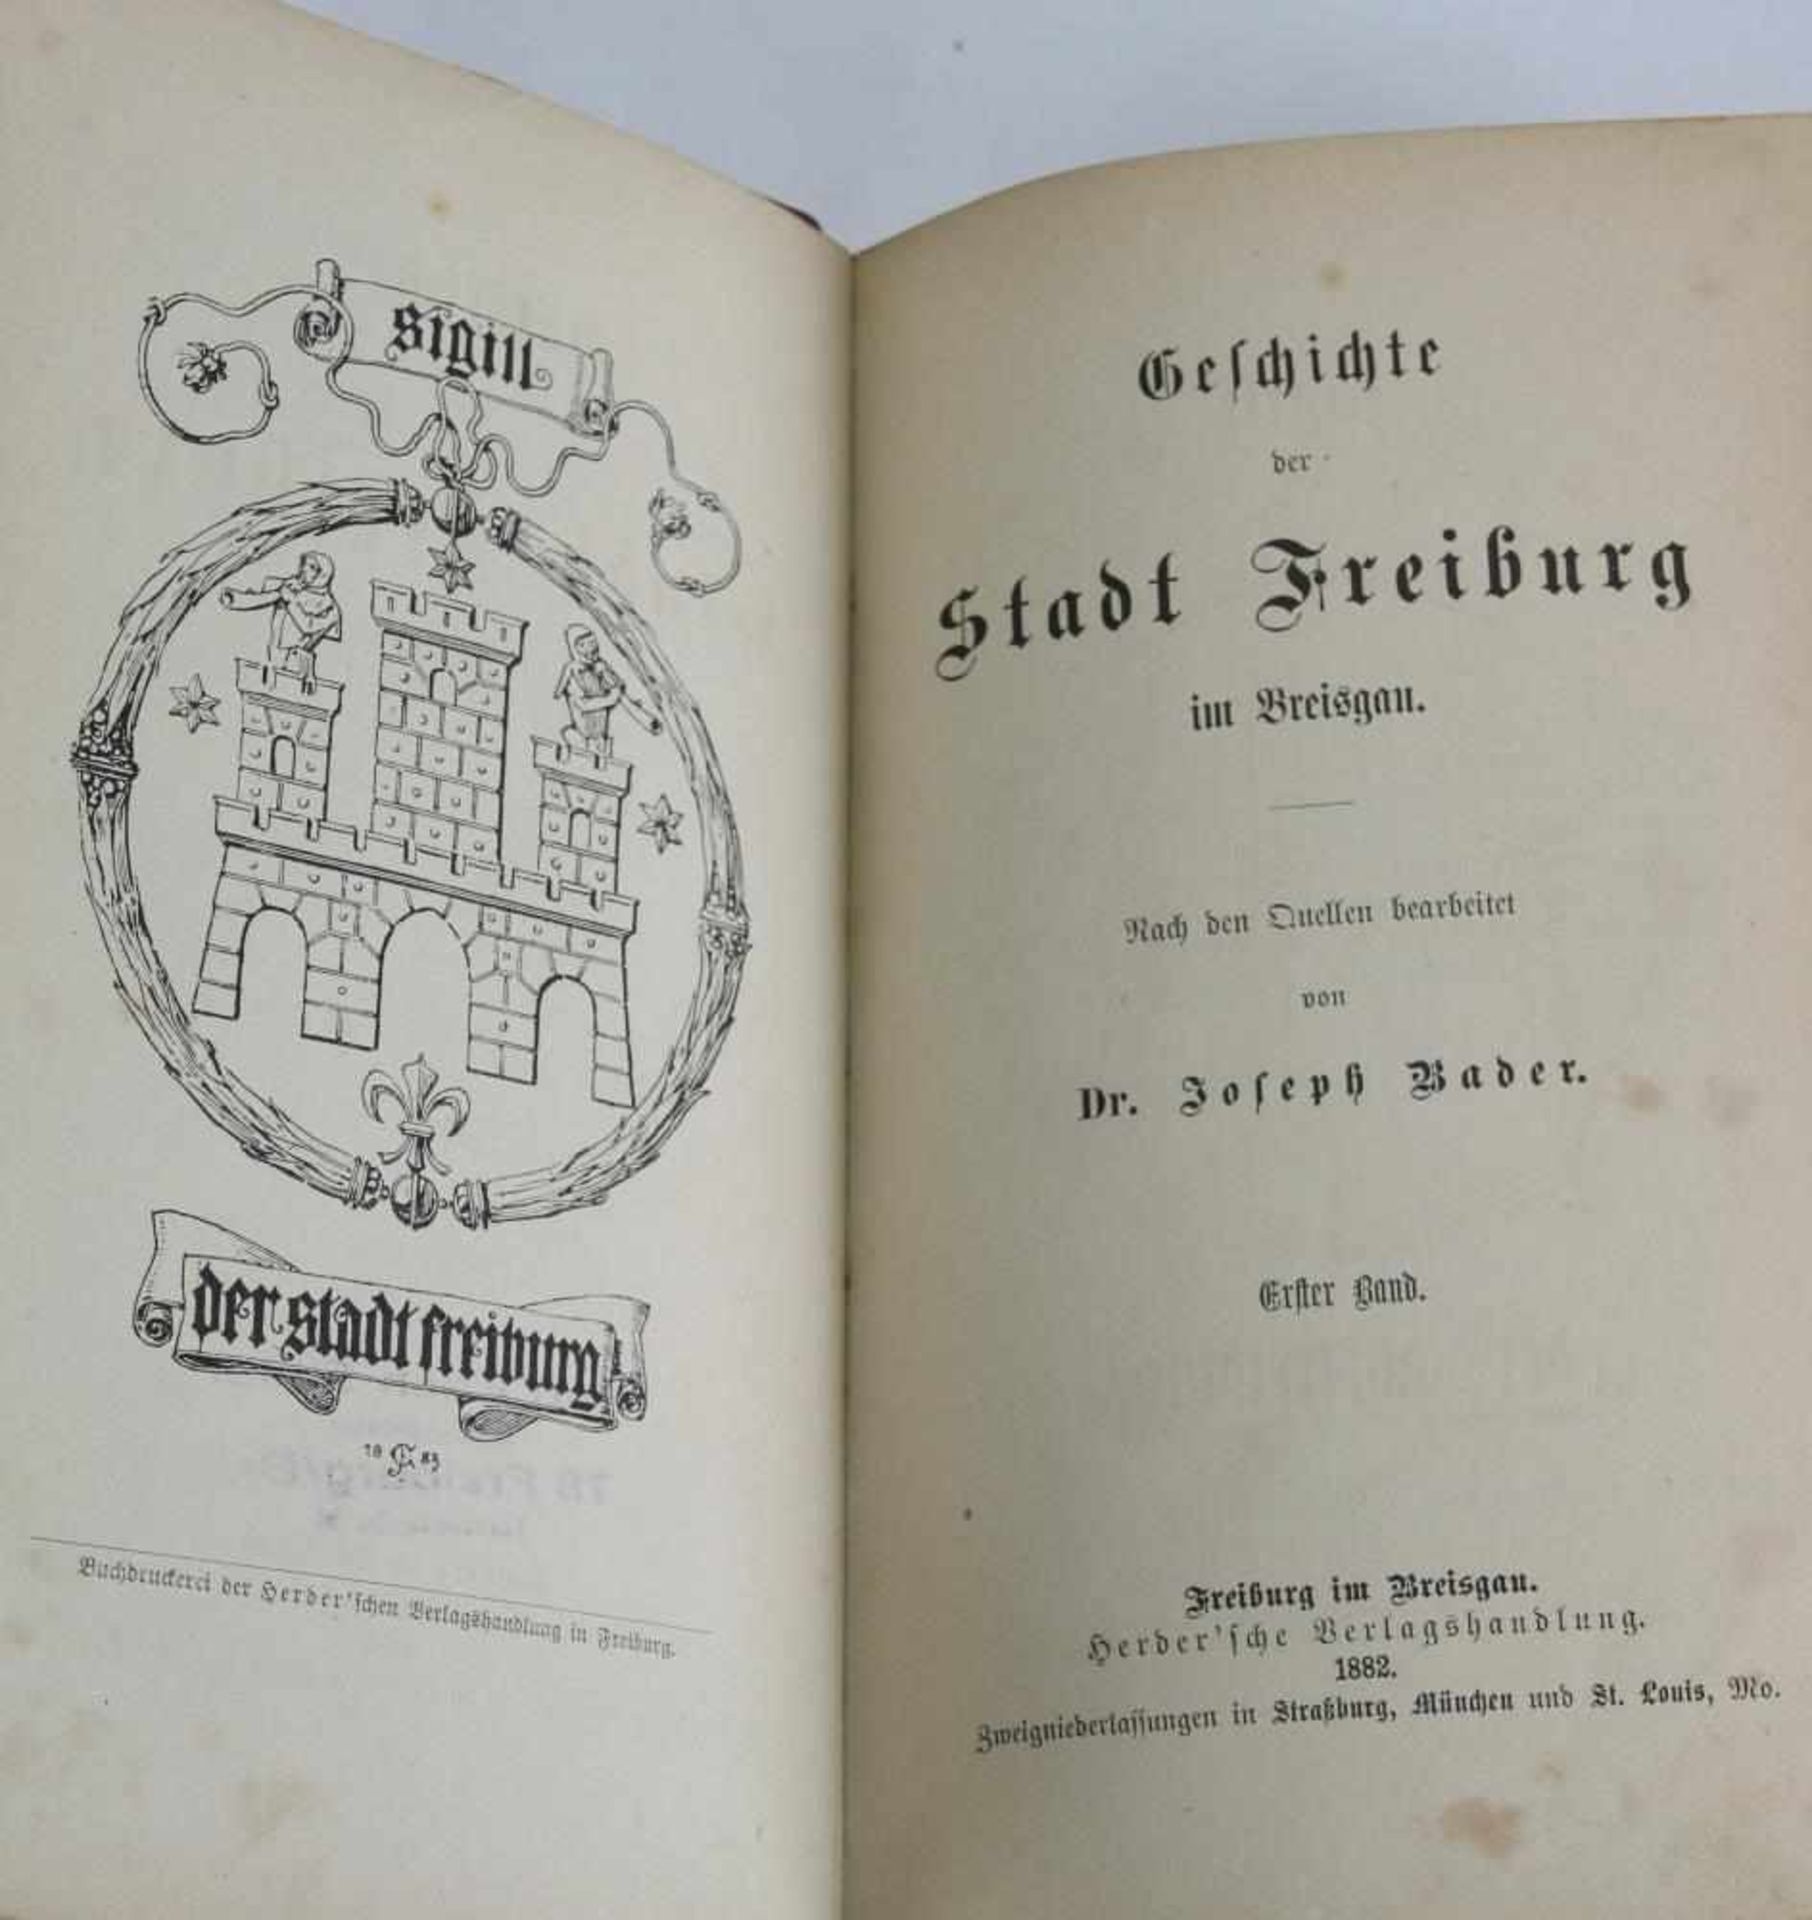 Dr. Joseph Bader Geschichte der Stadt Freiburg im Breisgau. Zwei Bände in einem. Halbledereinband - Image 2 of 3